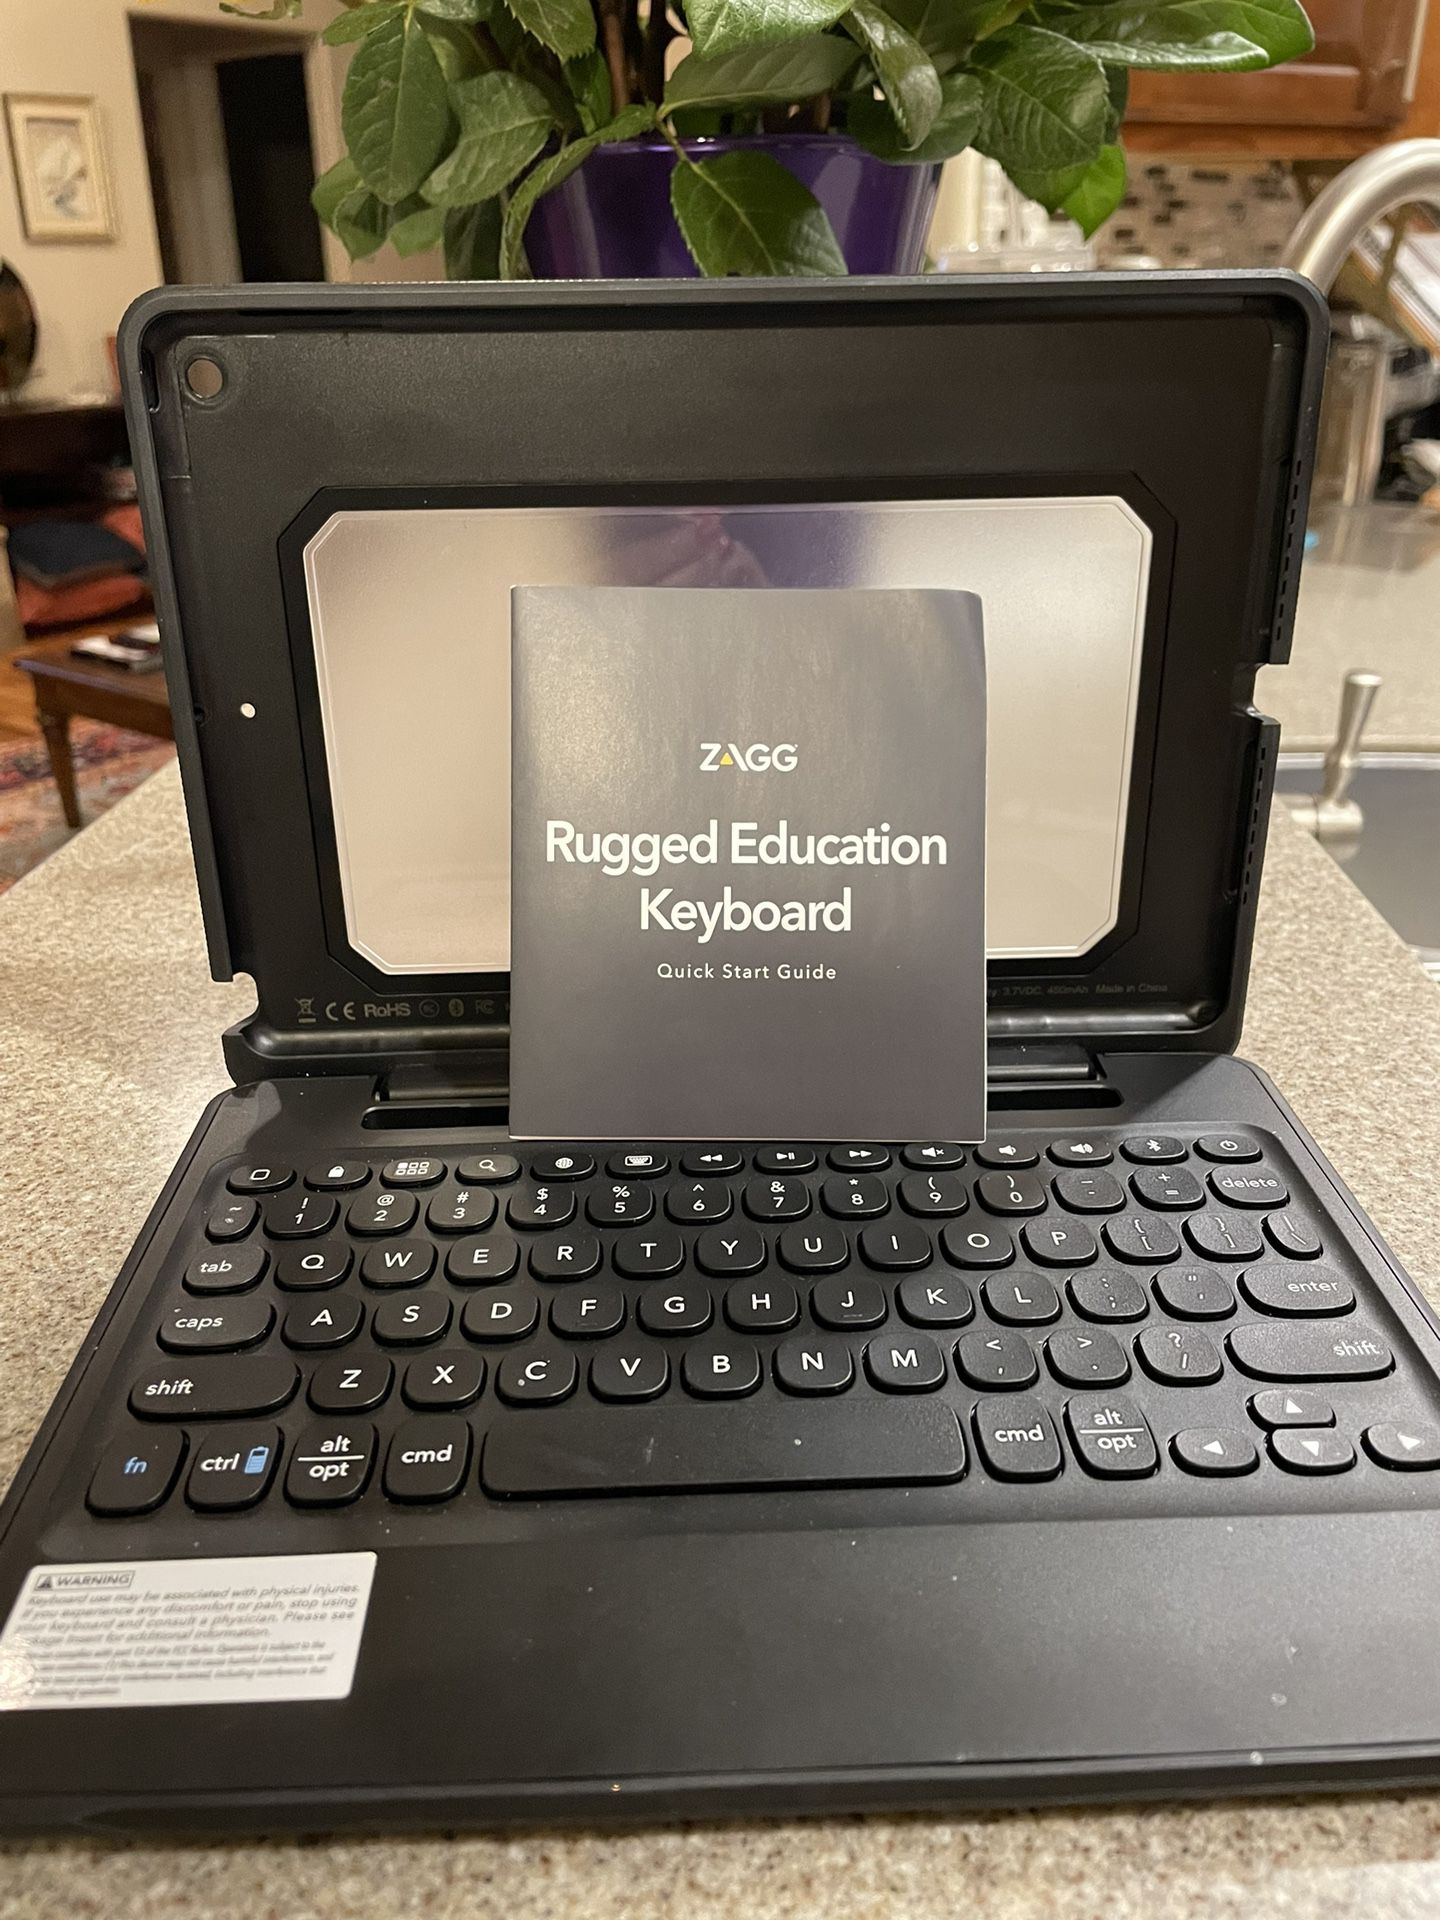 Keyboard/case $50.00